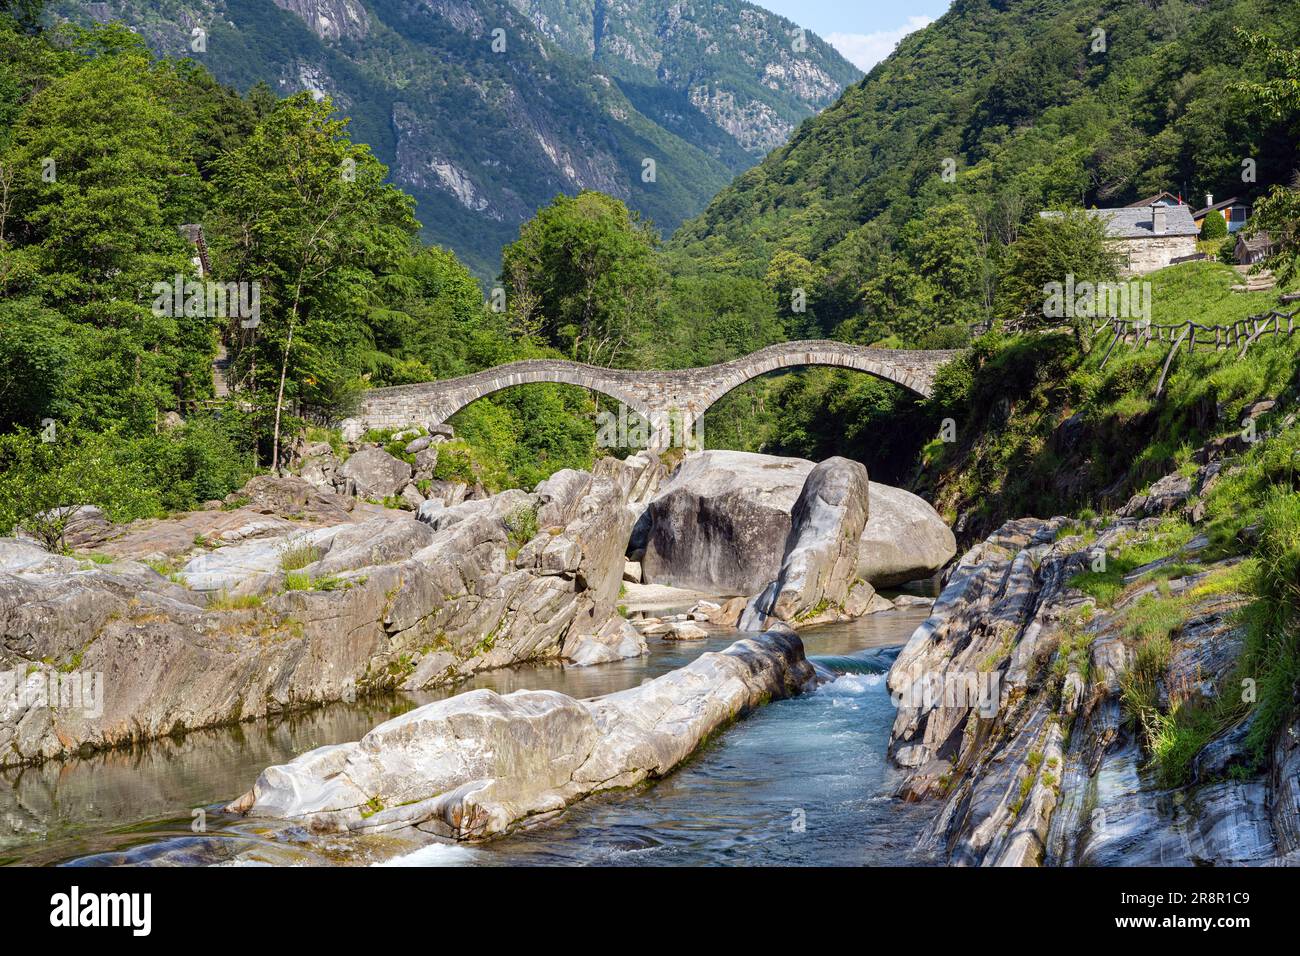 Roman bridge (Ponte dei Salti) crossing the Verzasca River at Lavertezzo in the Verzasca Valley, Canton of Ticino, Switzerland, Europe Stock Photo